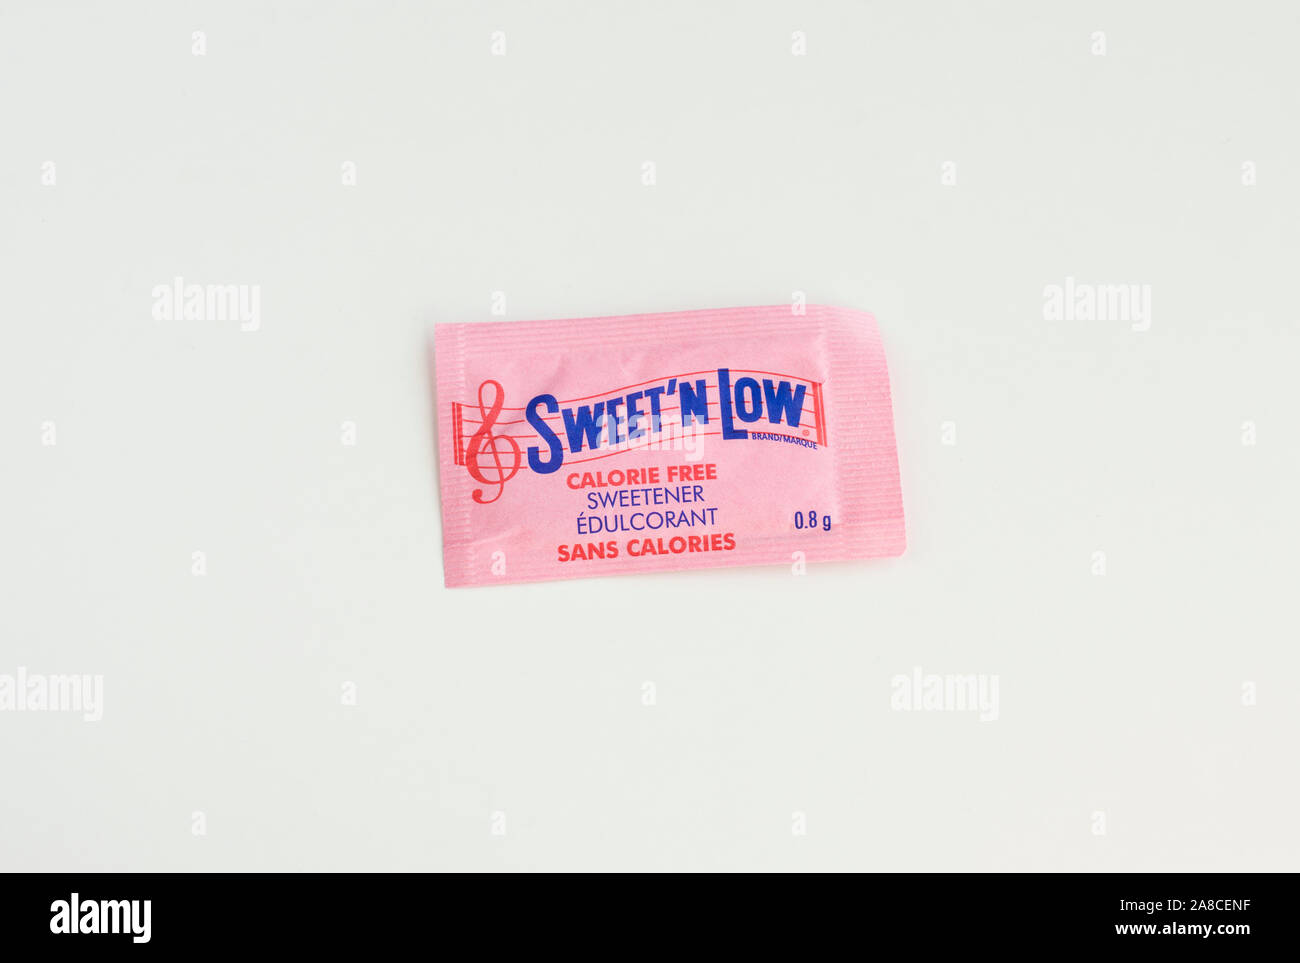 Pacchetto di dolce'N a basso contenuto calorico libera dolcificante artificiale. Foto Stock